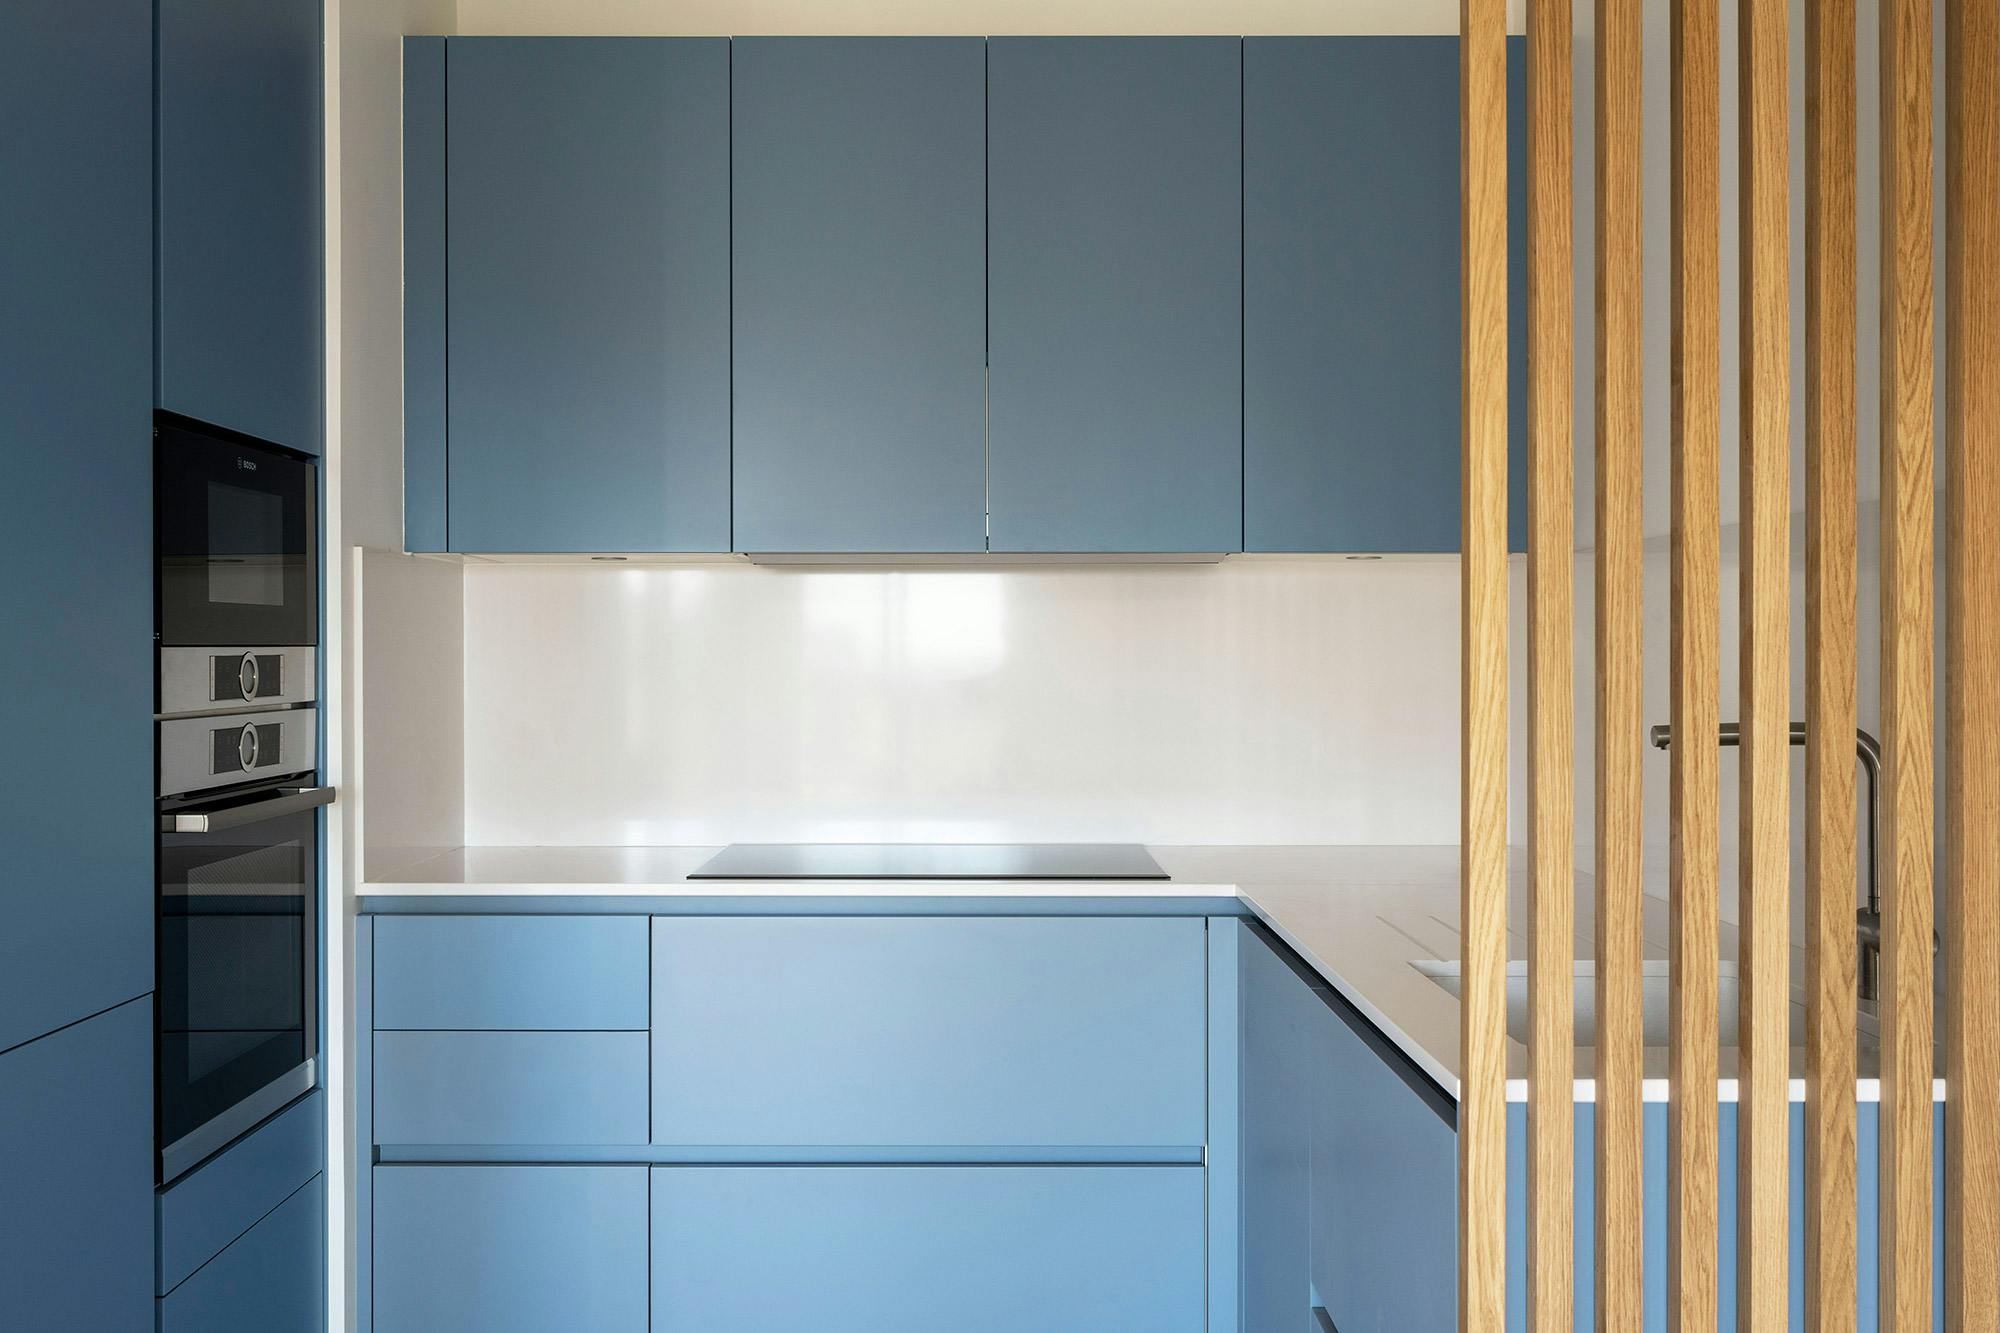 Numero immagine 36 della sezione corrente di DKTN and Silestone enhance the kitchen and bathroom design in a Tokyo home di Cosentino Italia